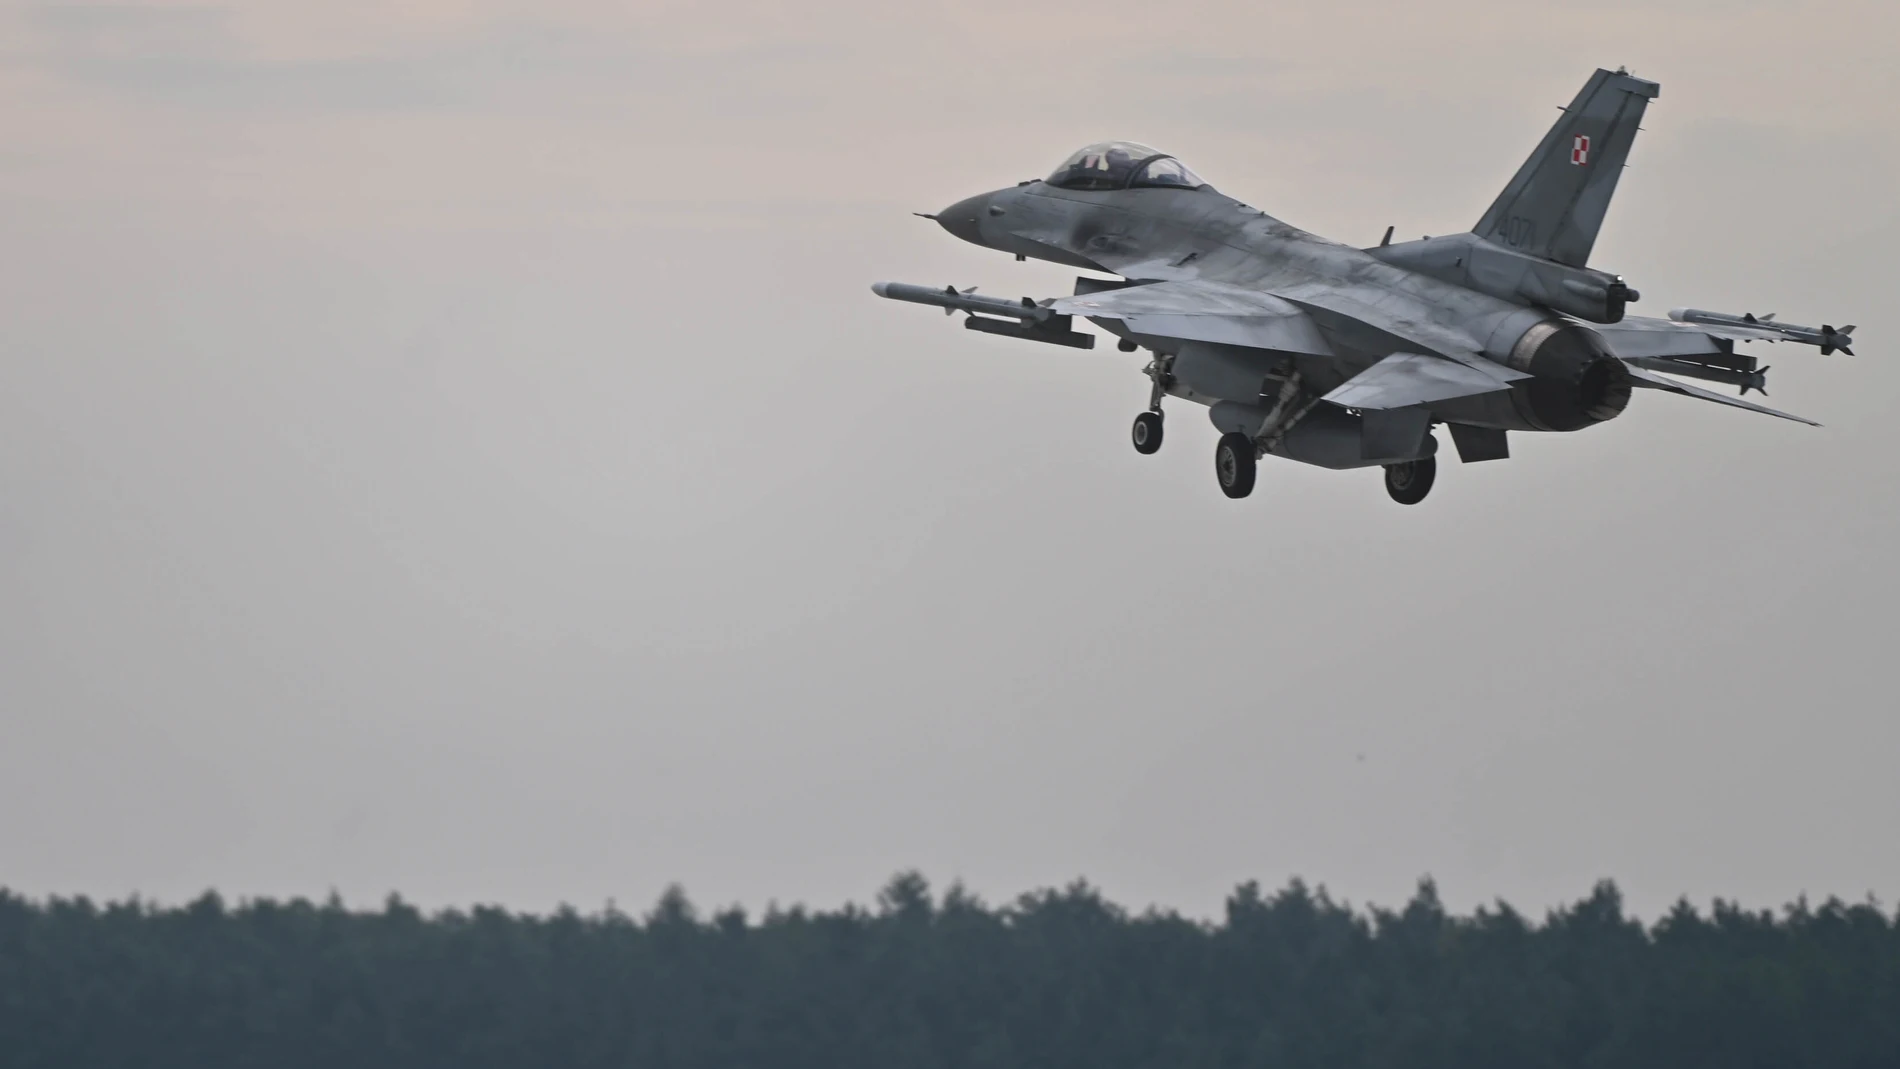 Lask (Poland), 23/08/2022.- Un avión de combate F-16 aterrizando. (Polonia) EFE/EPA/Grzegorz Michalowski